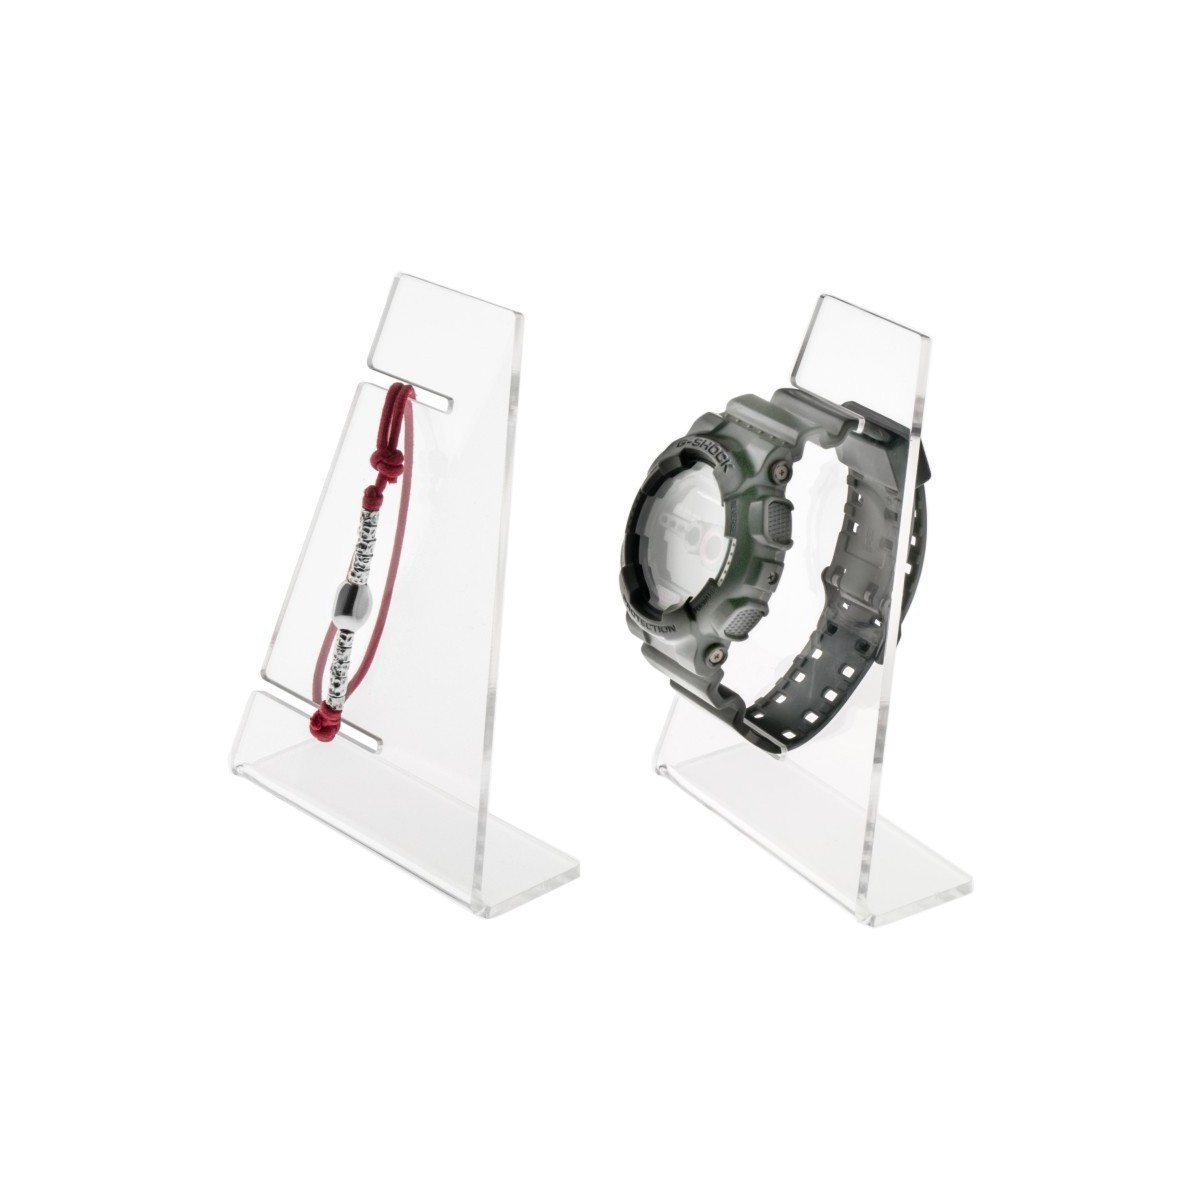 Portaorologi in plexiglass trasparente a 1 postazione - Misure: 9x4x H13 cm